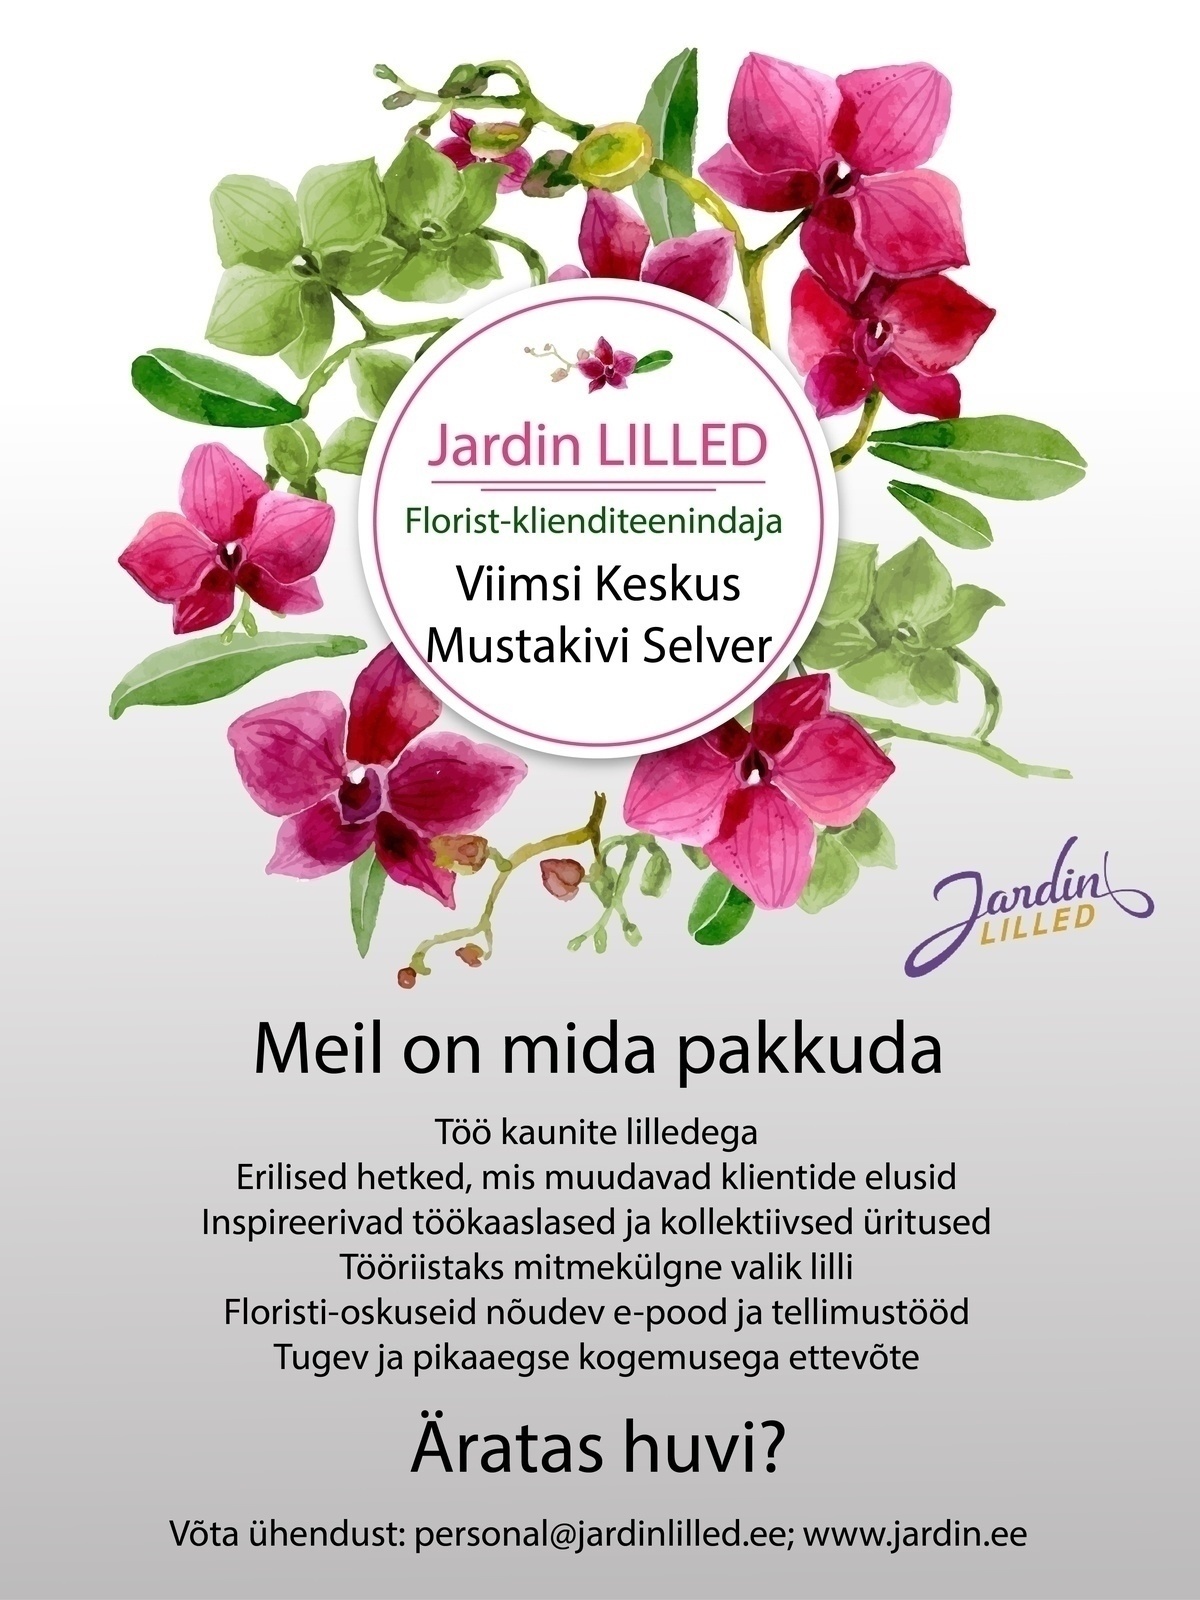 Jardin OÜ Florist-klienditeenindaja (Viimsi keskus ja Mustakivi Selver)